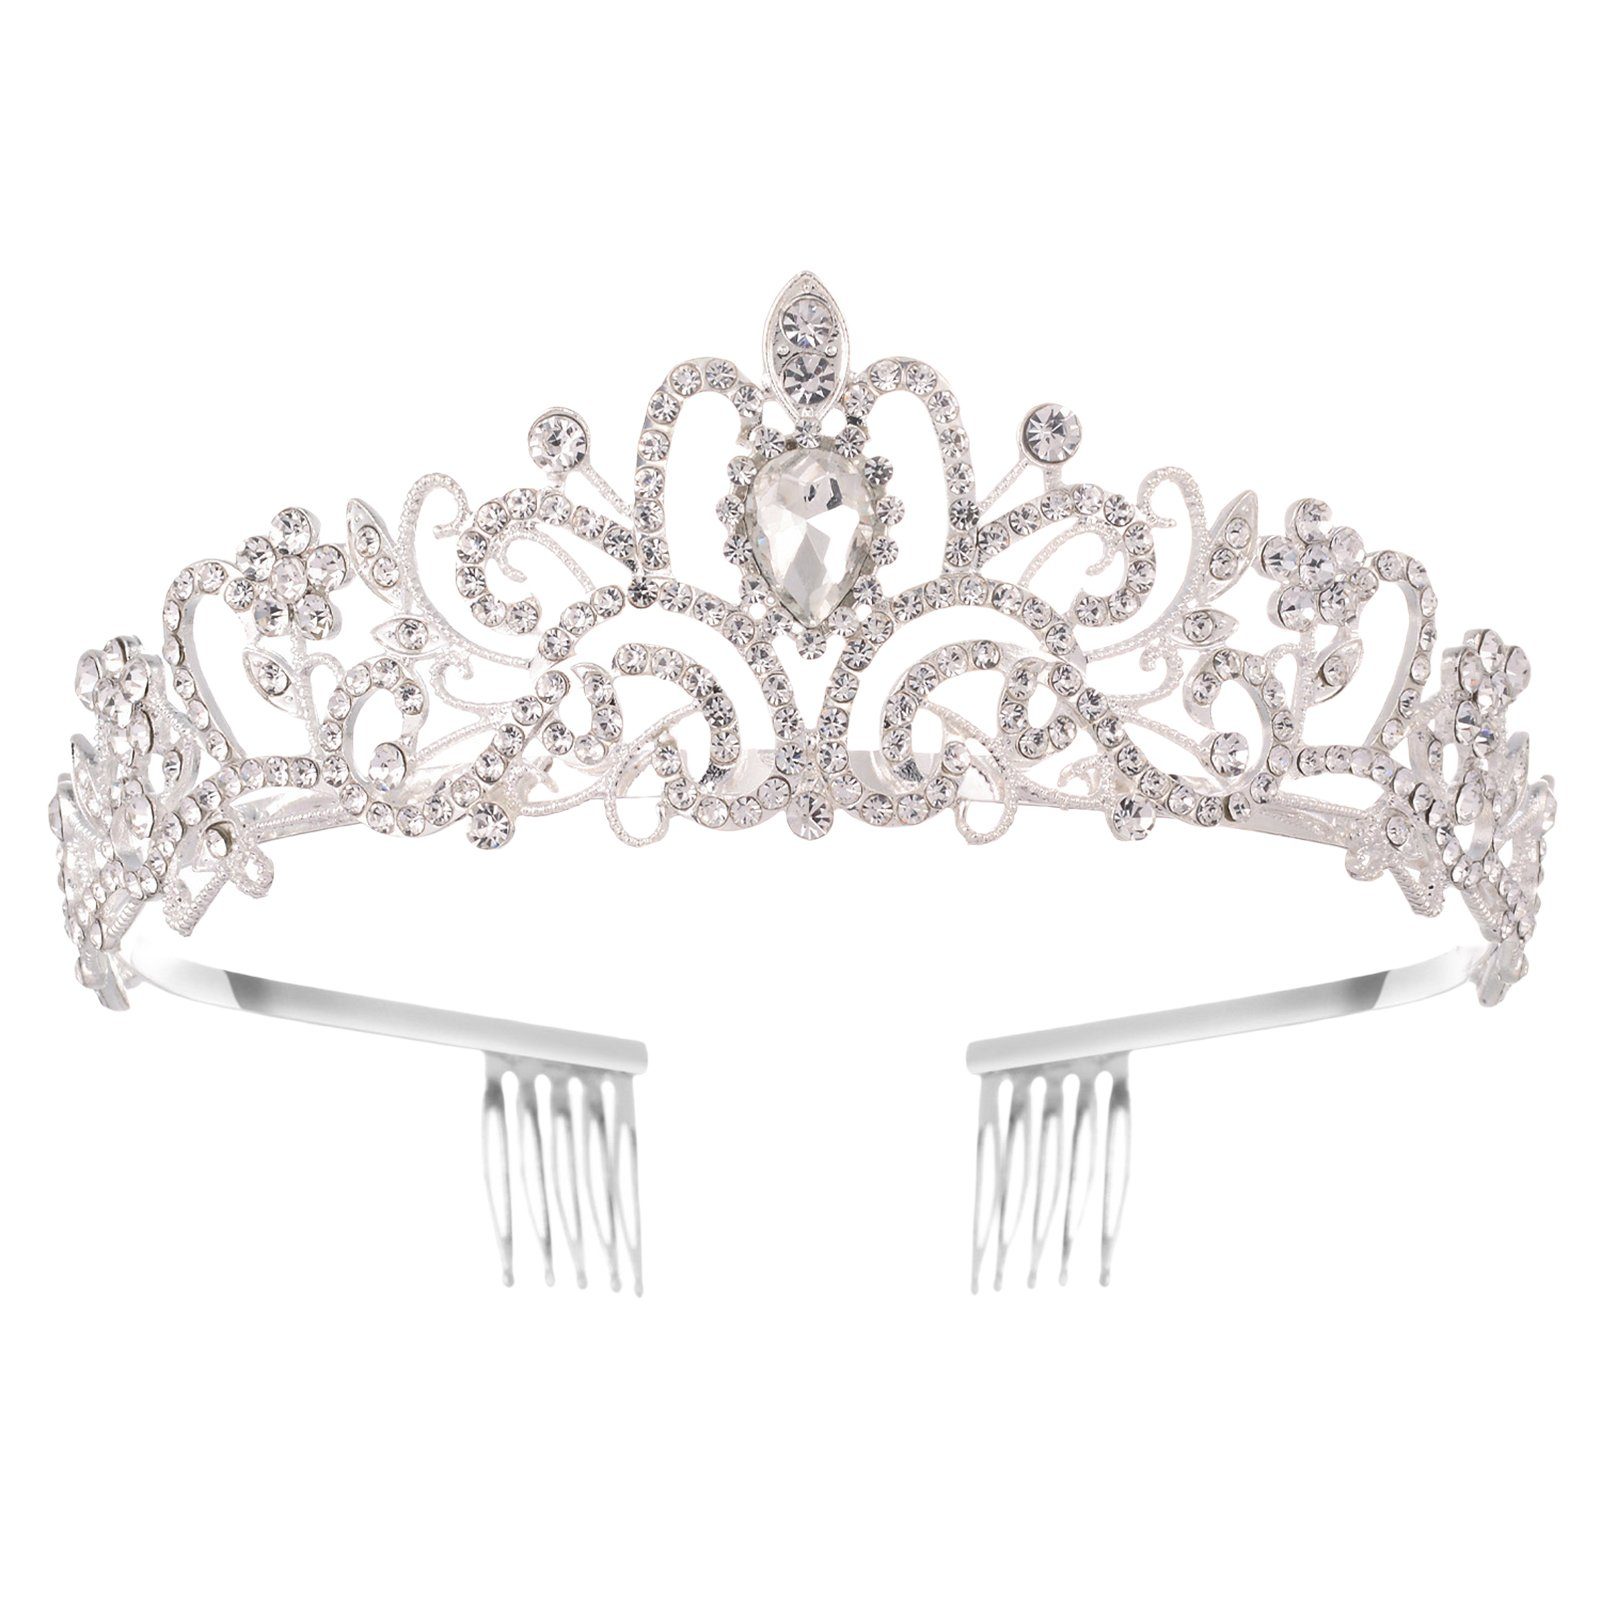 Blusmart Haarband Leichte, Luxuriöse silver Haarschmuck, Haarband Hochzeit, Für Strass-Kronen-Tiaras